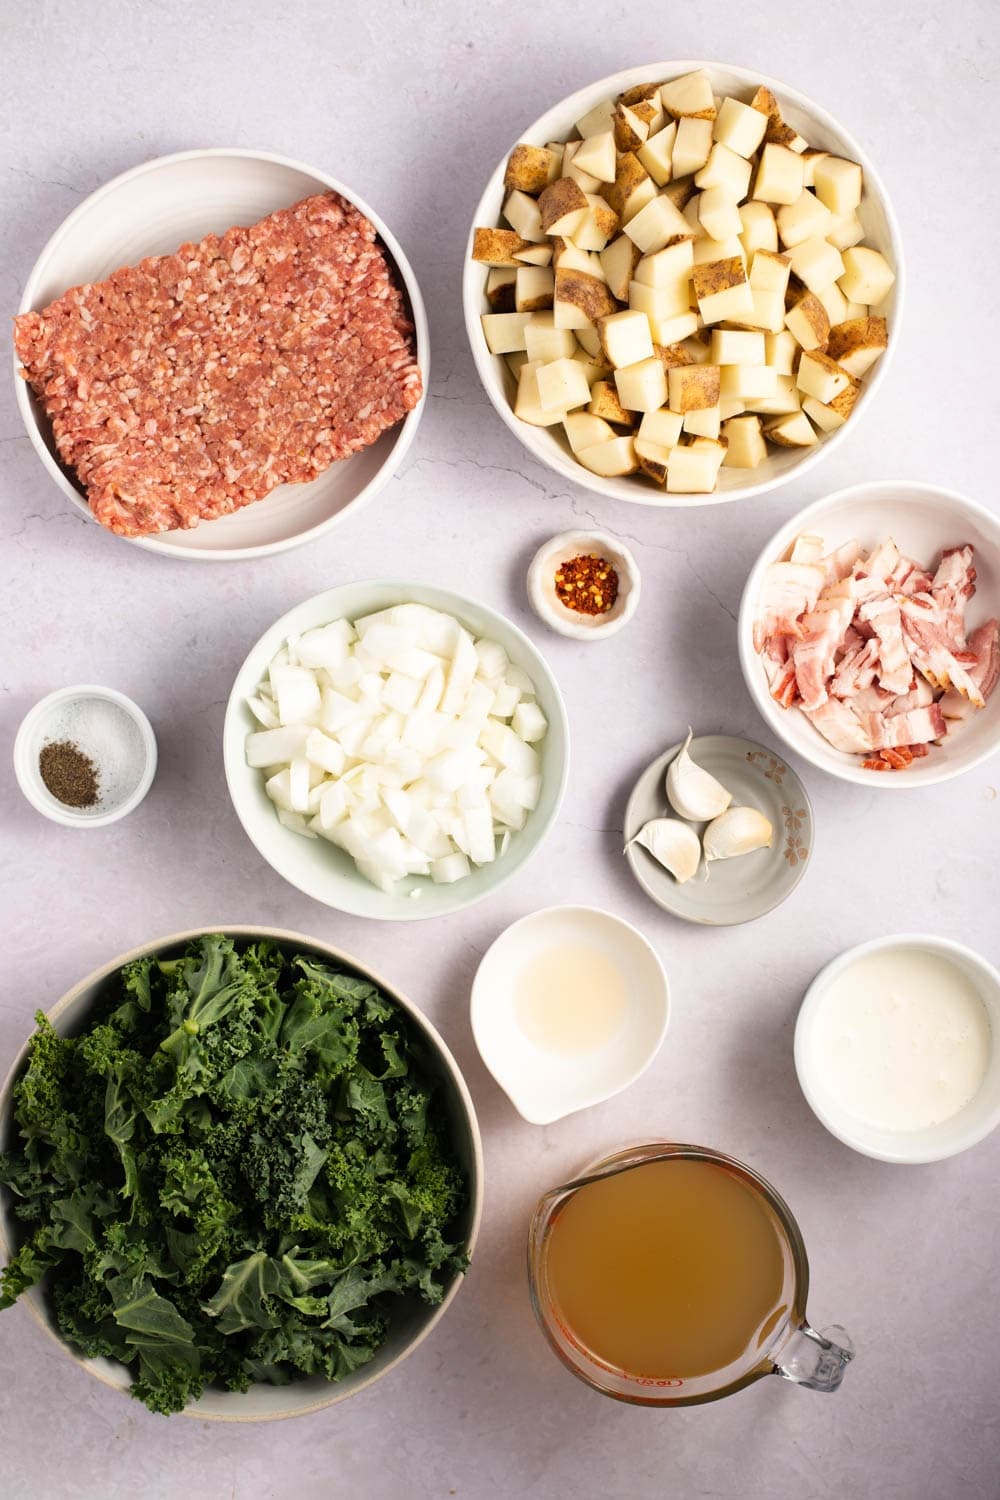 Zuppa Toscanasoppa ingredienser - italiensk korv, bacon, potatis, vitlök, lök, kycklingbuljong, grönkål och kraftig grädde